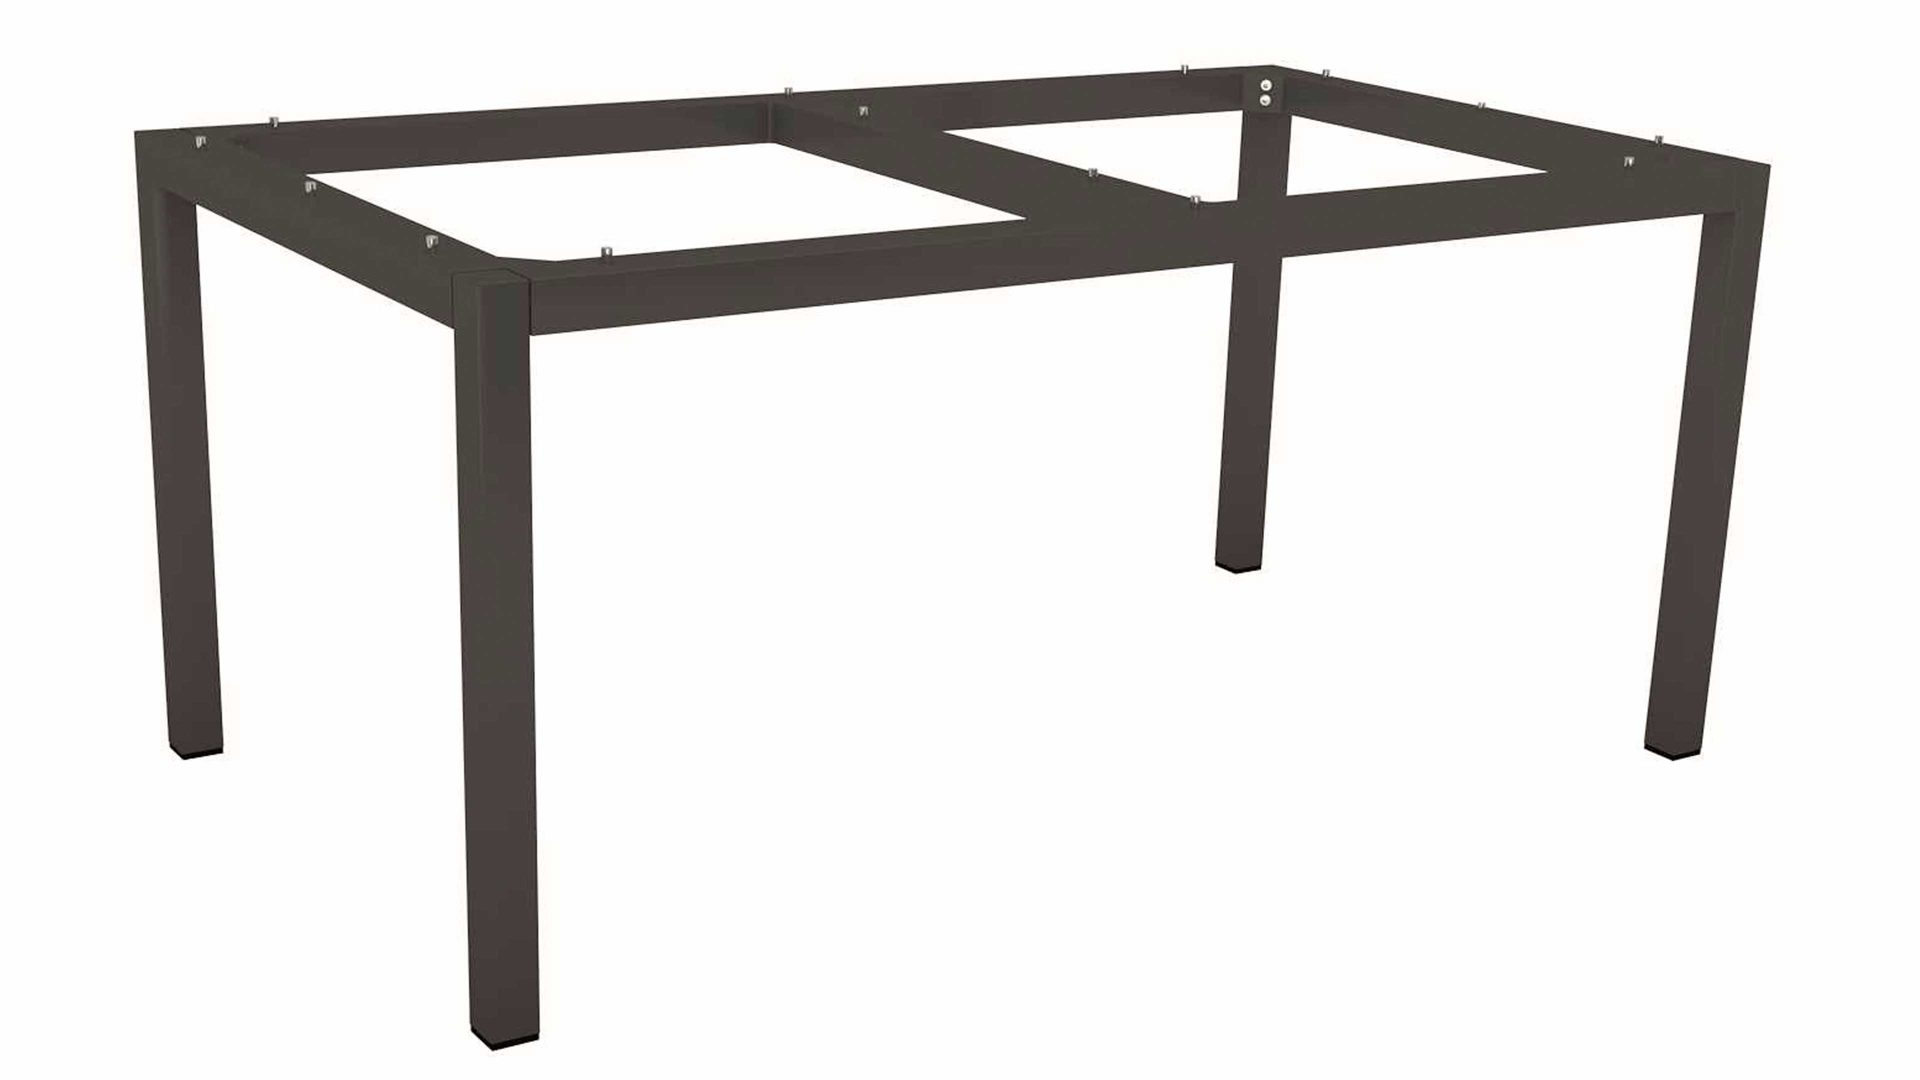 Gartentisch Stern® aus Metall in Anthrazit STERN® Tisch-System Silverstar - Tischgestell anthrazitfarbenes Aluminium - ca. 160 x 90 cm